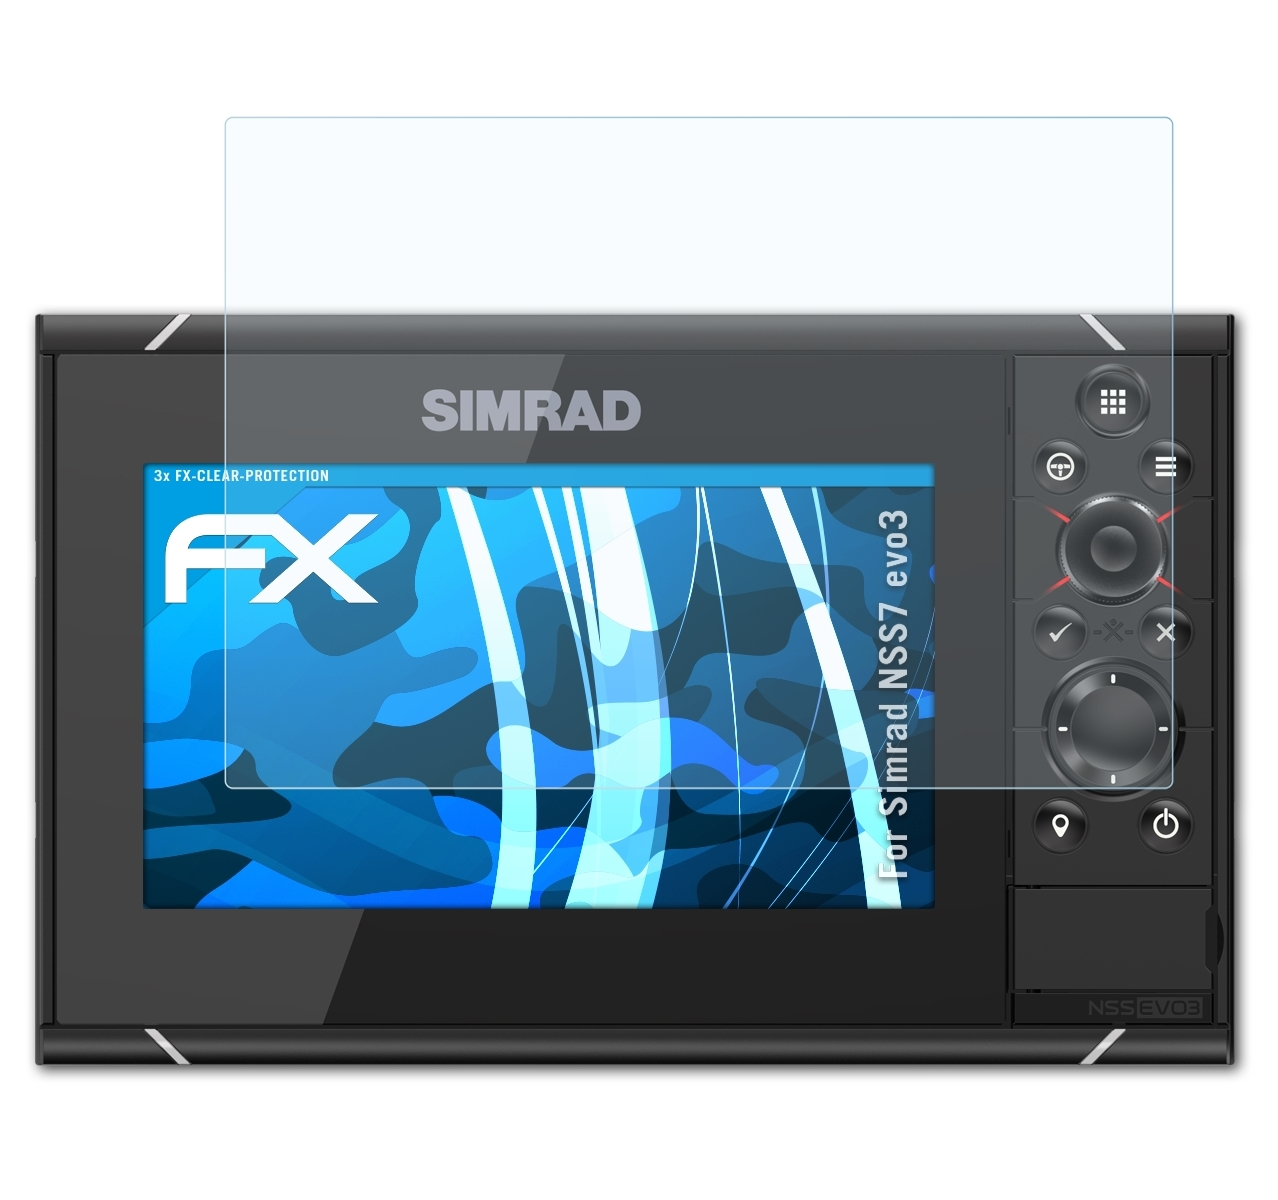 NSS7 evo3) Simrad FX-Clear ATFOLIX 3x Displayschutz(für